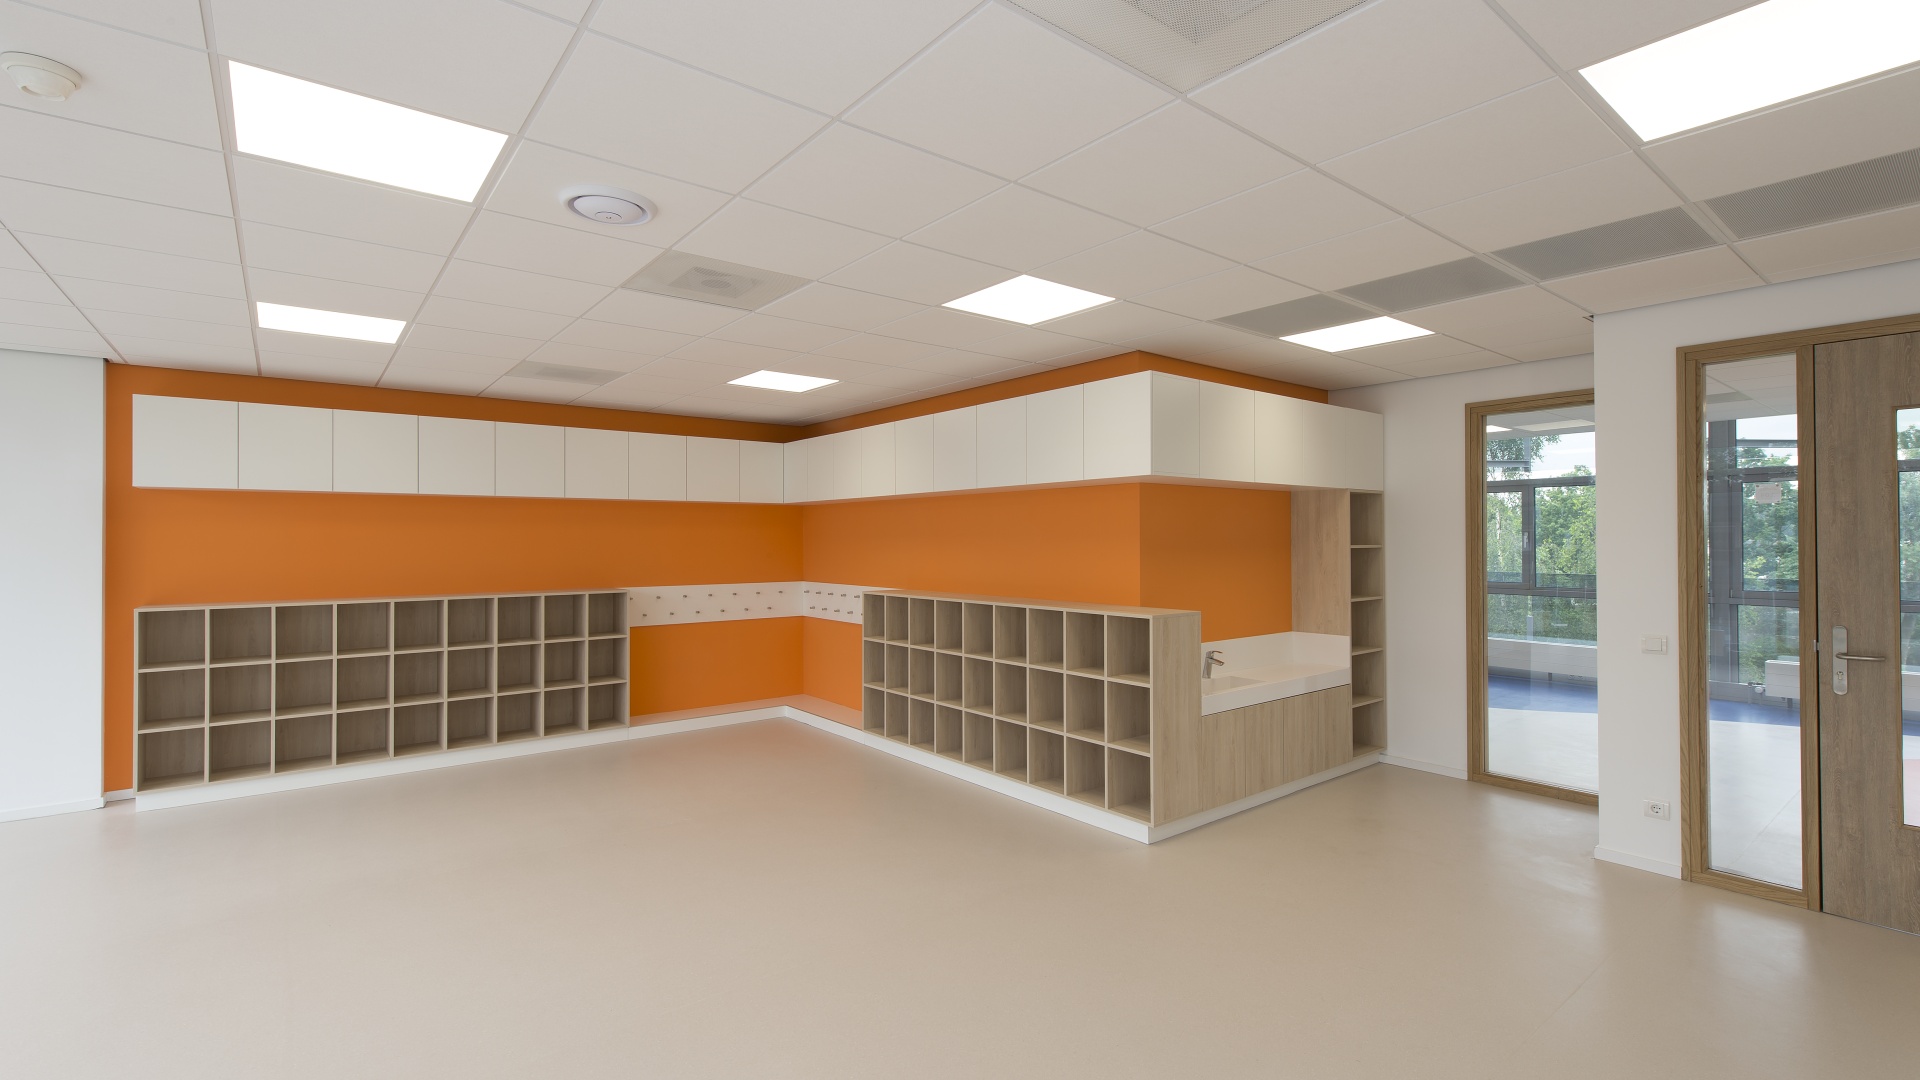 Kasten, garderobe en wastafel in klaslokaal, kleur eiken/ wit / oranje, onderwijsmeubilair